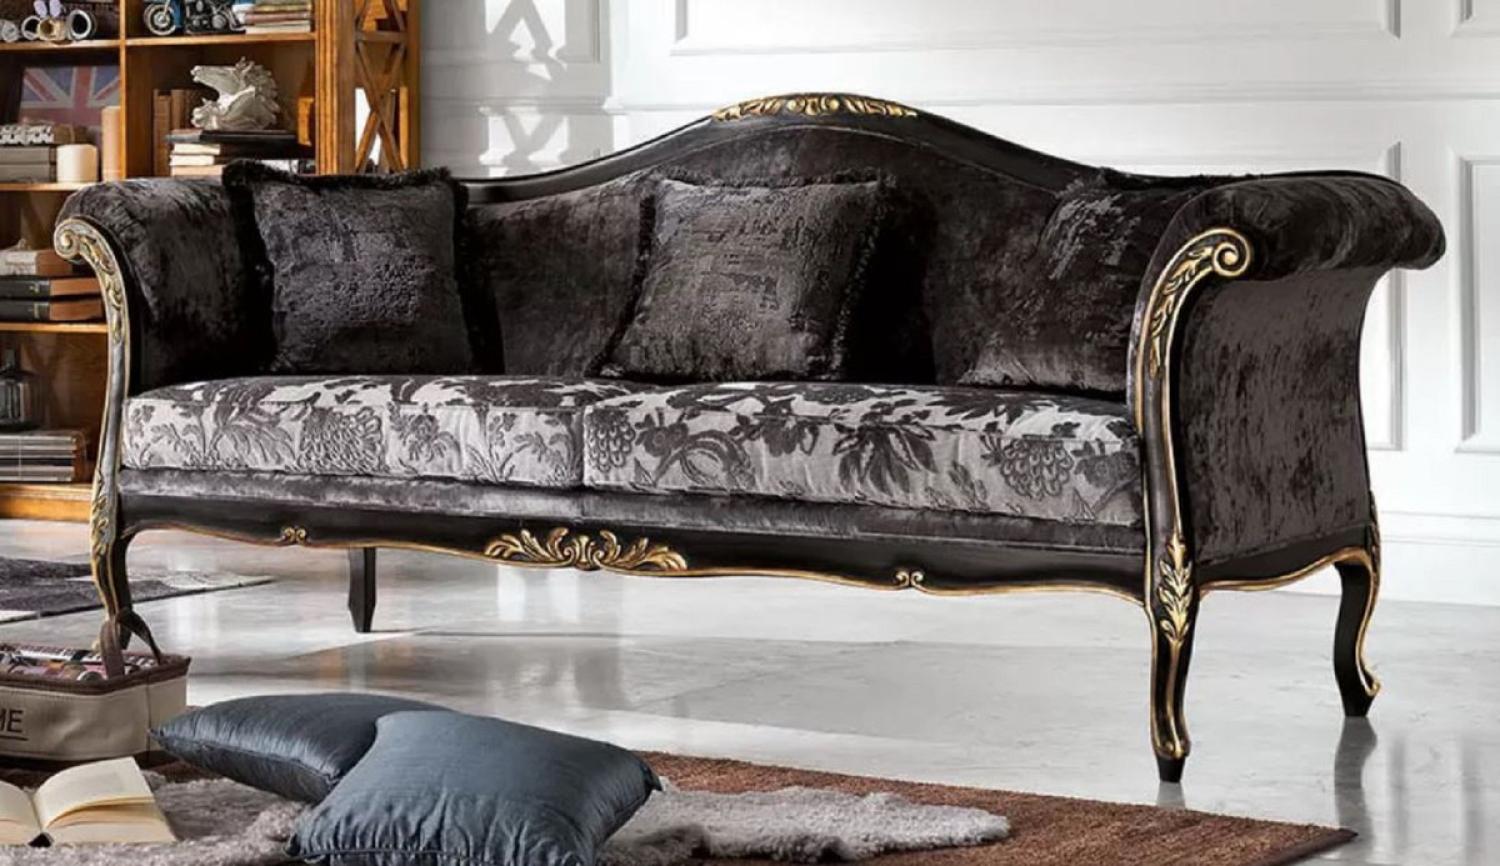 Casa Padrino Luxus Barock Sofa Grau / Schwarz / Gold - Edles Wohnzimmer Sofa mit elegantem Muster - Barock Möbel - Luxus Qualität - Made in Italy Bild 1